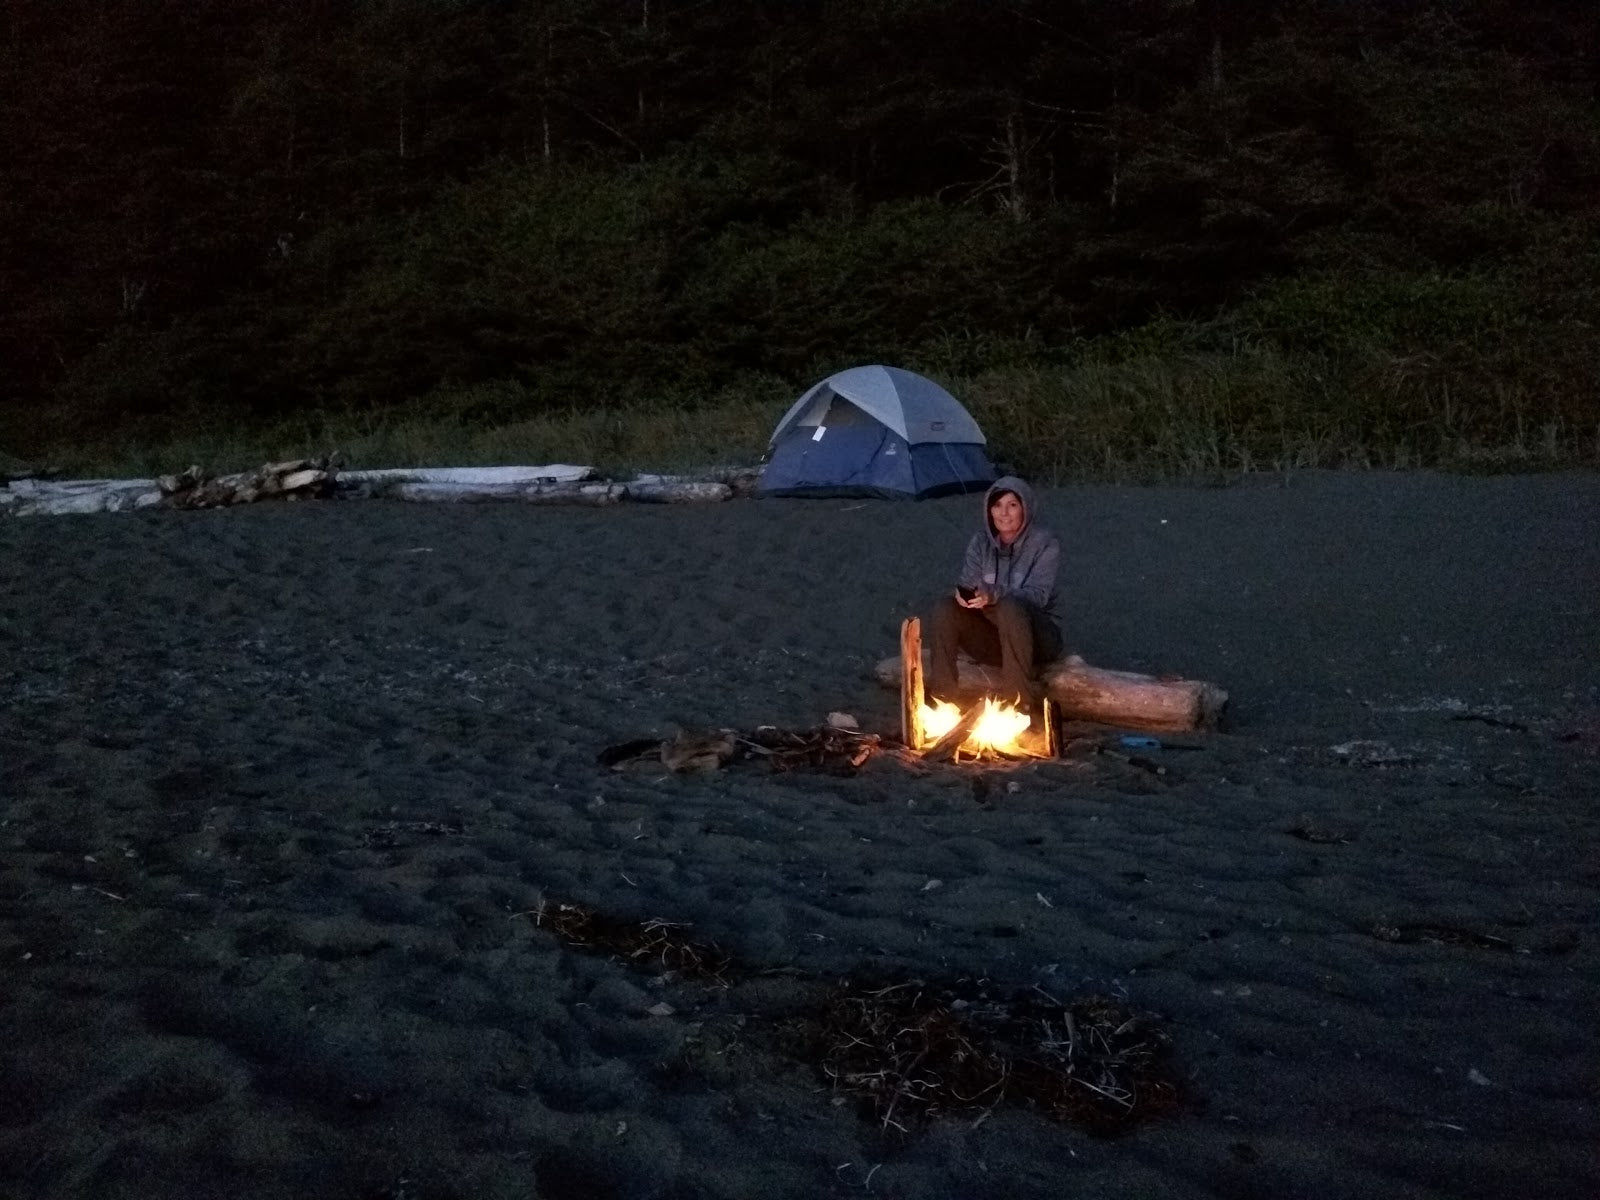 Six Amazing Hikes in Washington State - Shi Shi Beach Camping